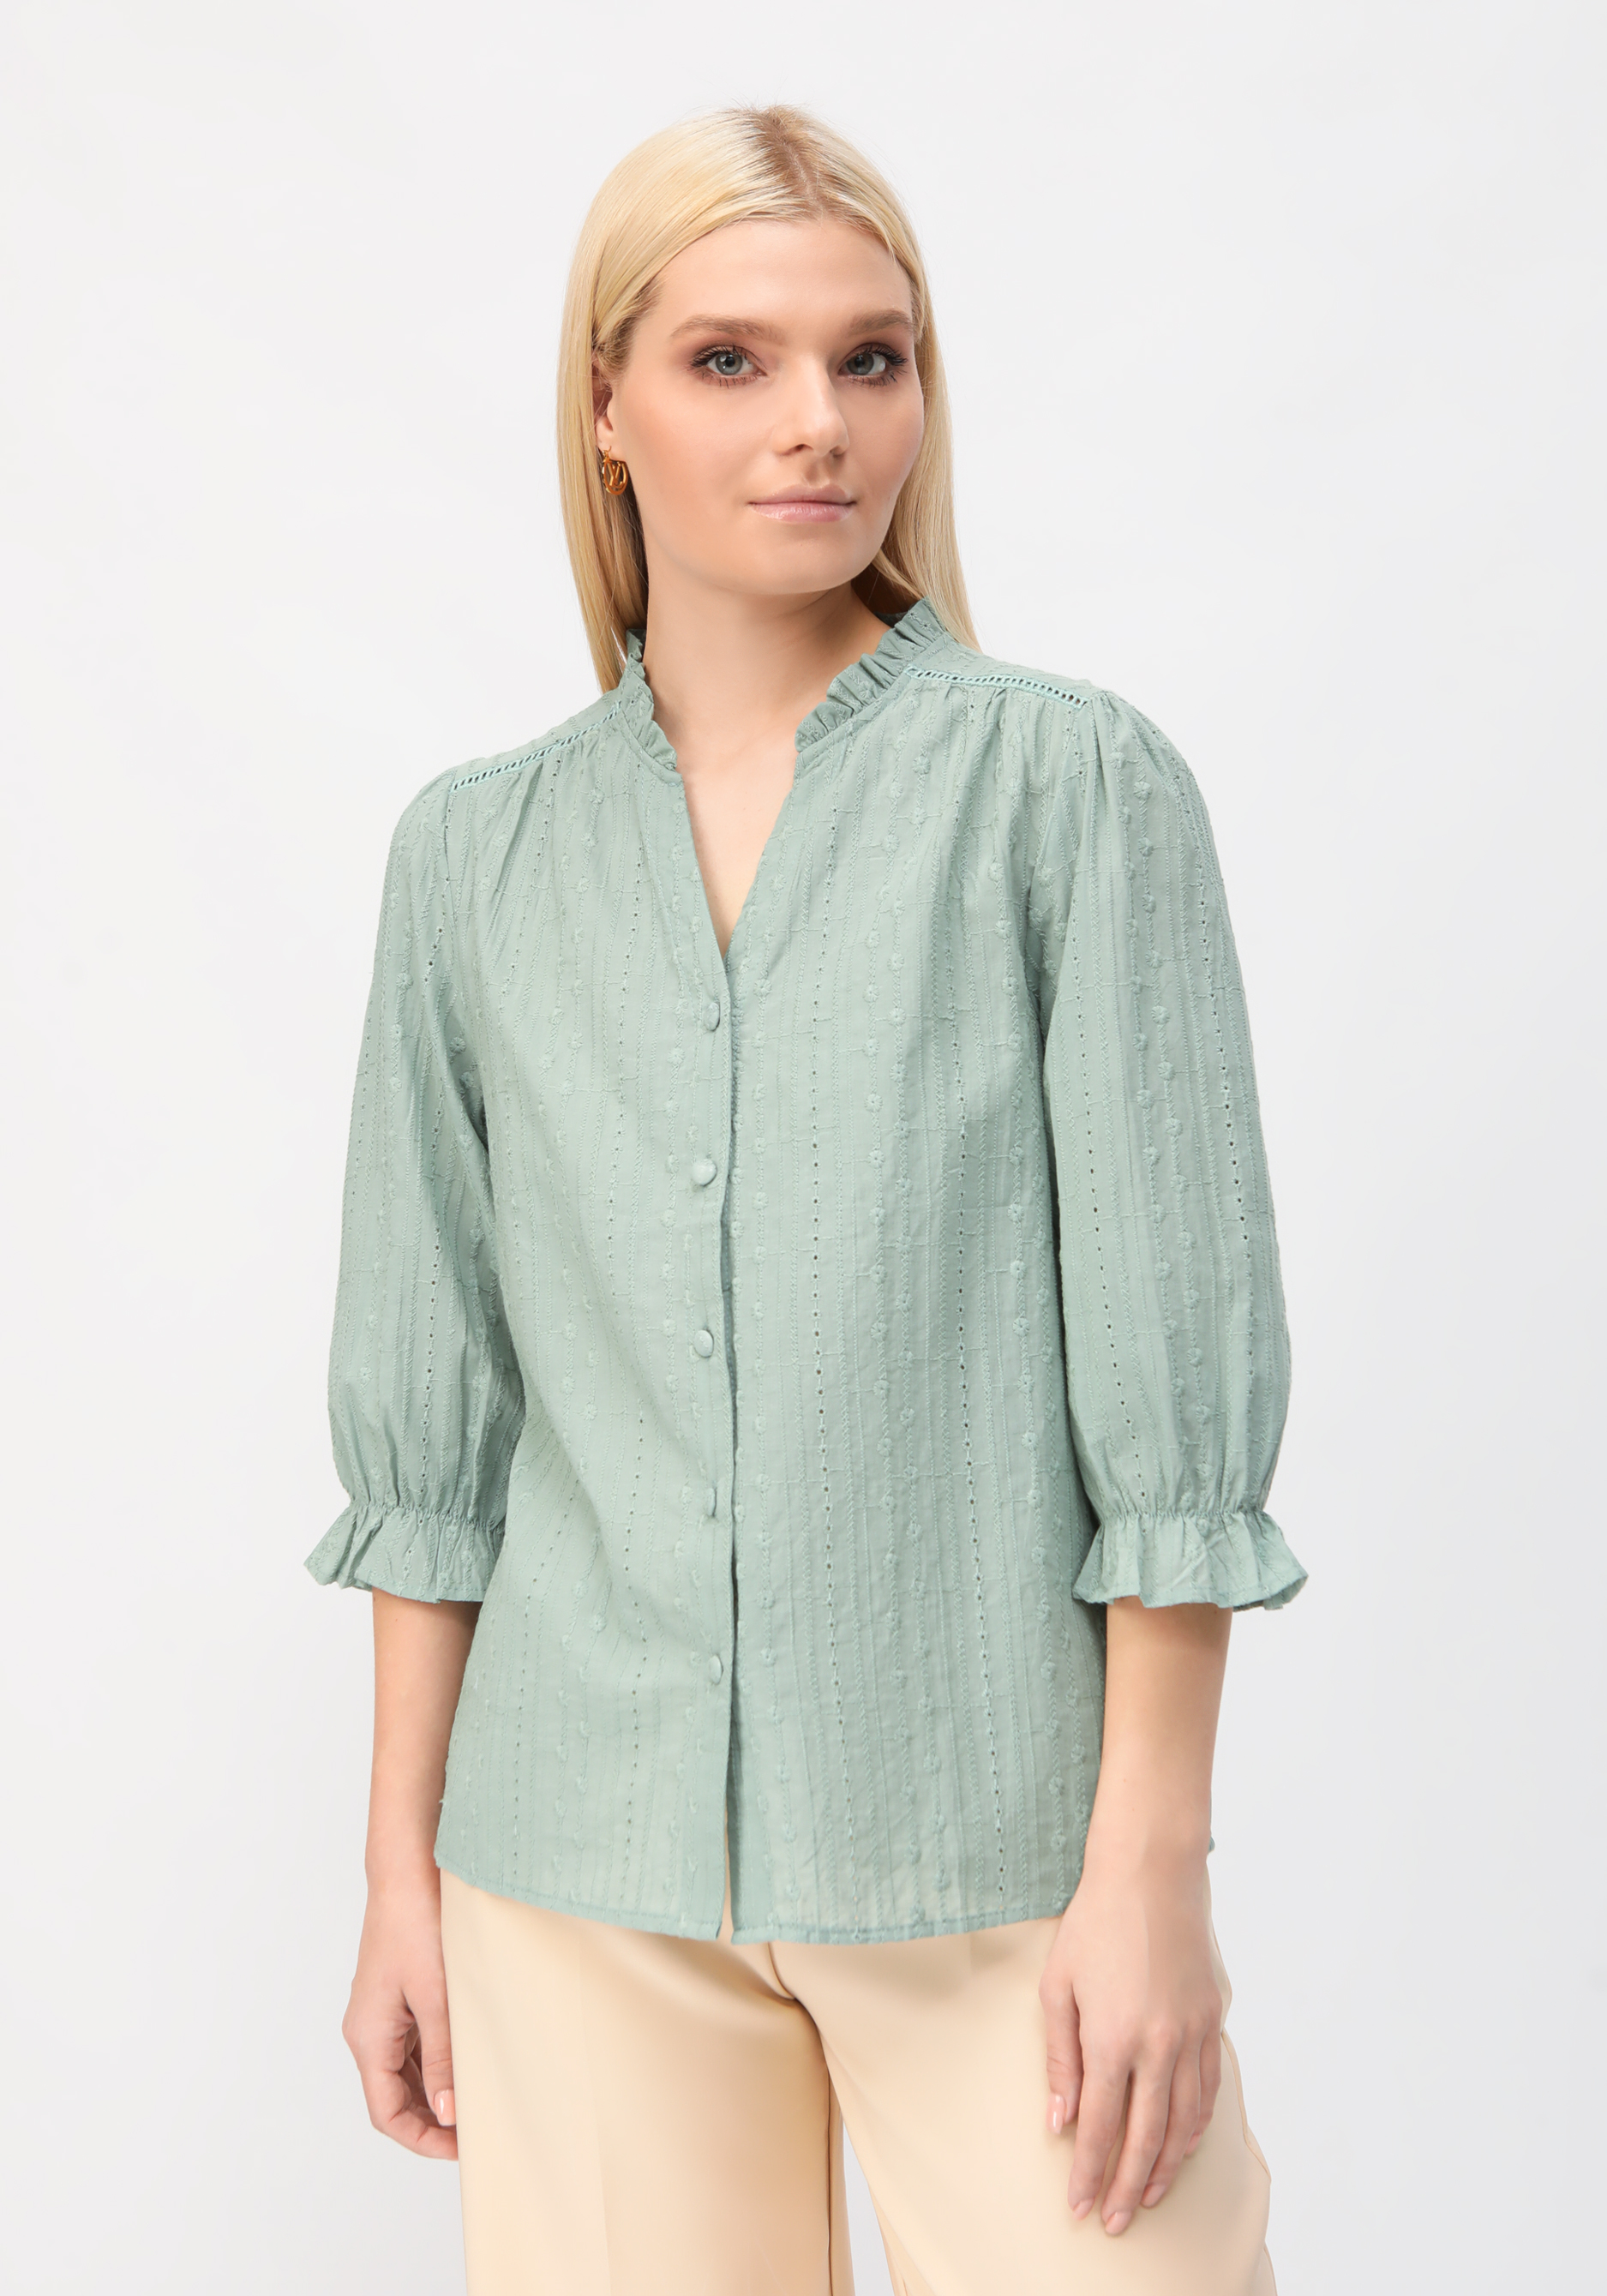 Блуза с воротником стойка  "Кристал" Fashion, цвет белый, размер 54